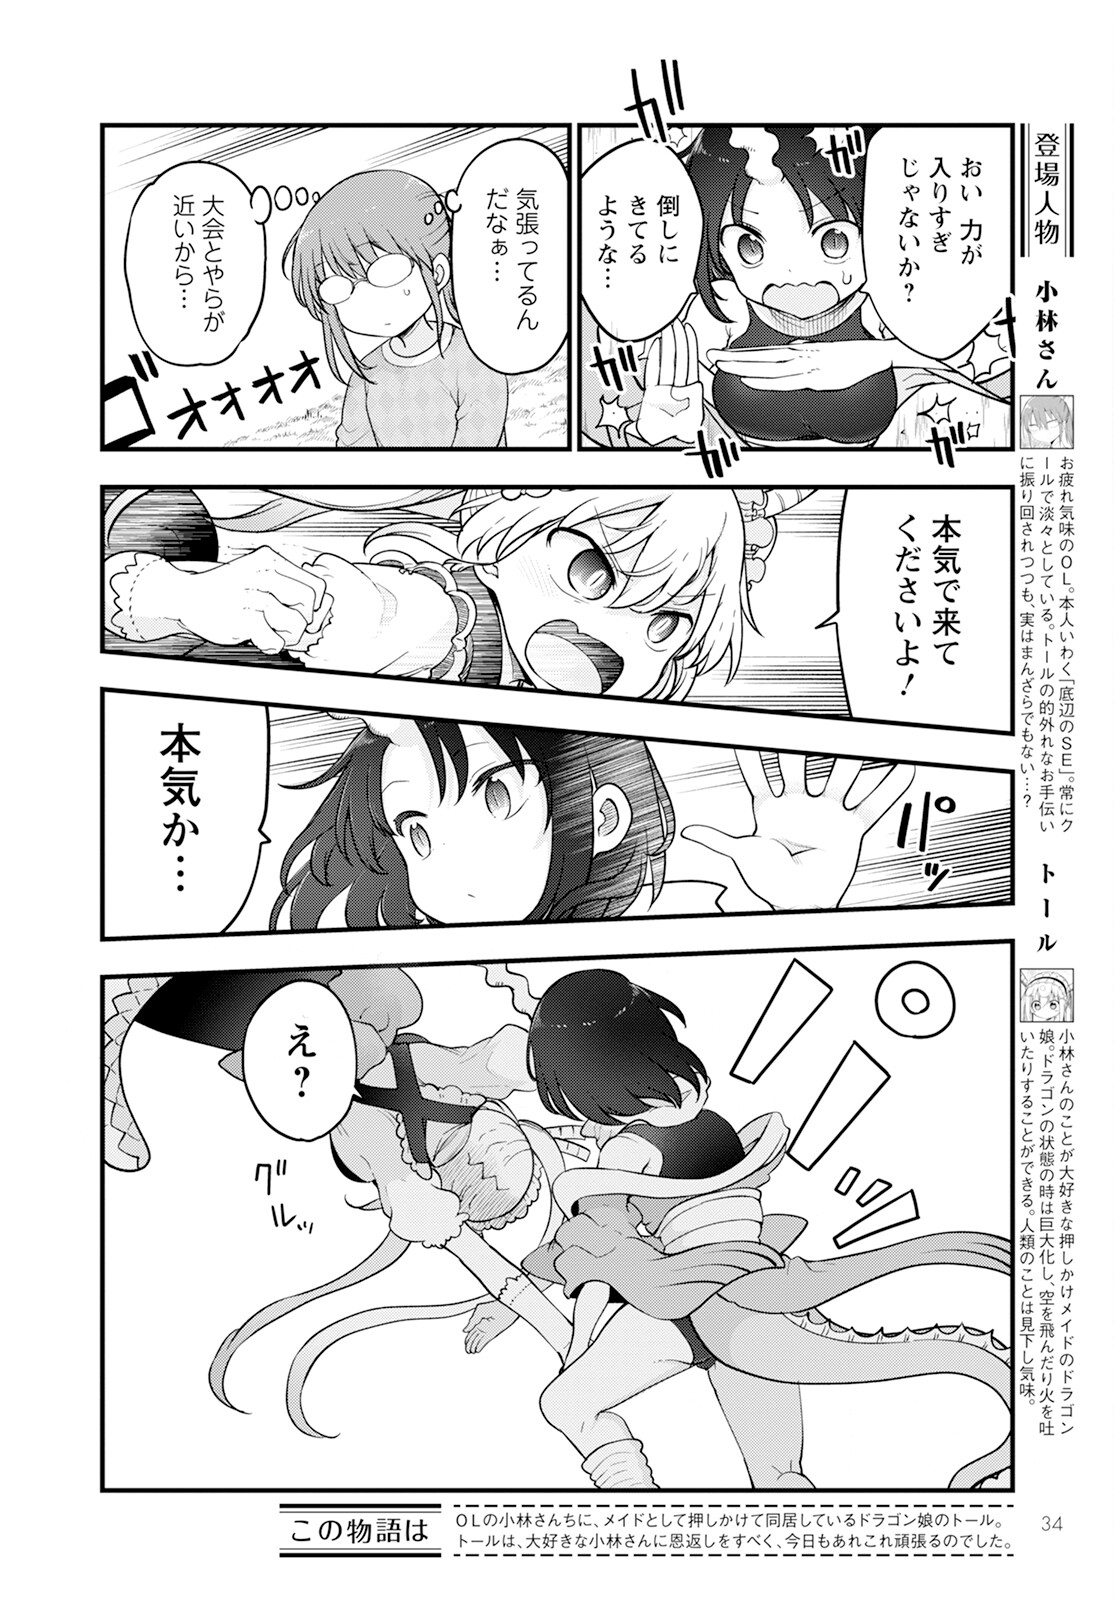 Kobayashi-san Chi no Maid Dragon - Chapter 138 - Page 2